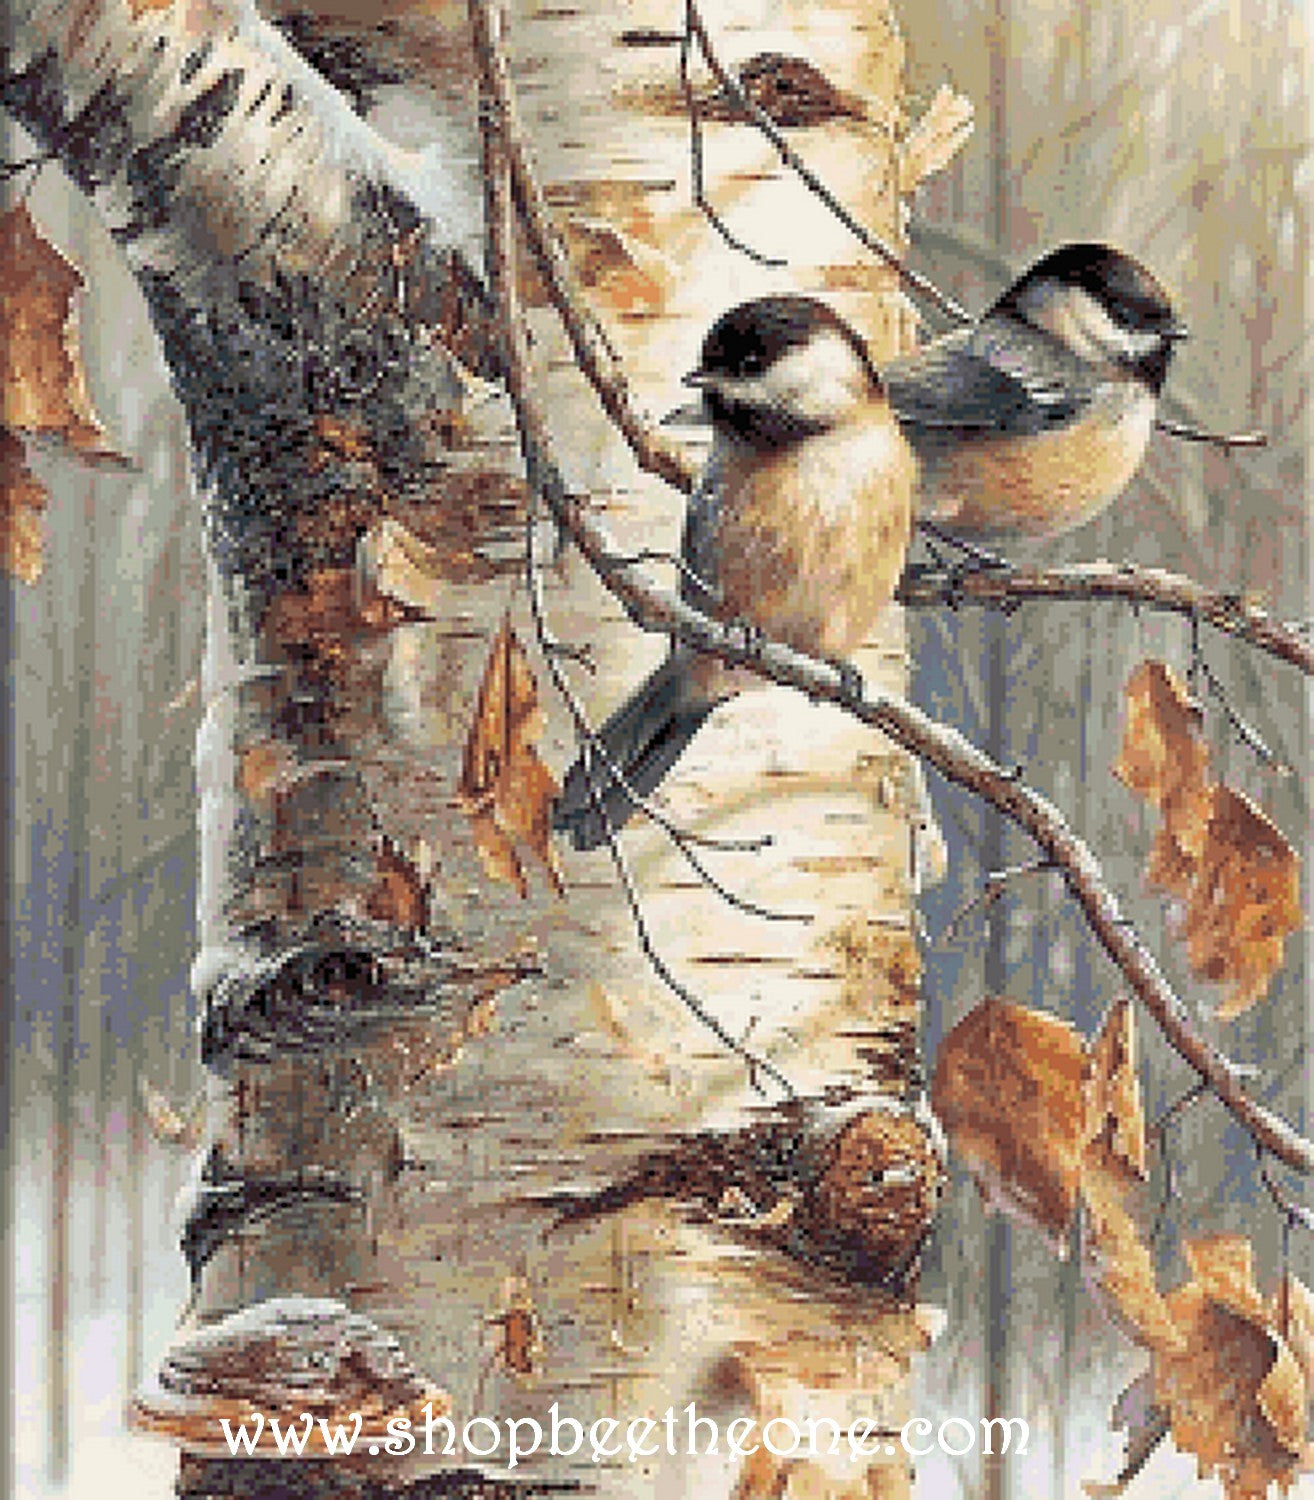 Diagramme grille digitale Broderie au point de croix - "Les Petits oiseaux dans la forêt hivernale" - Collection "Dans la forêt"